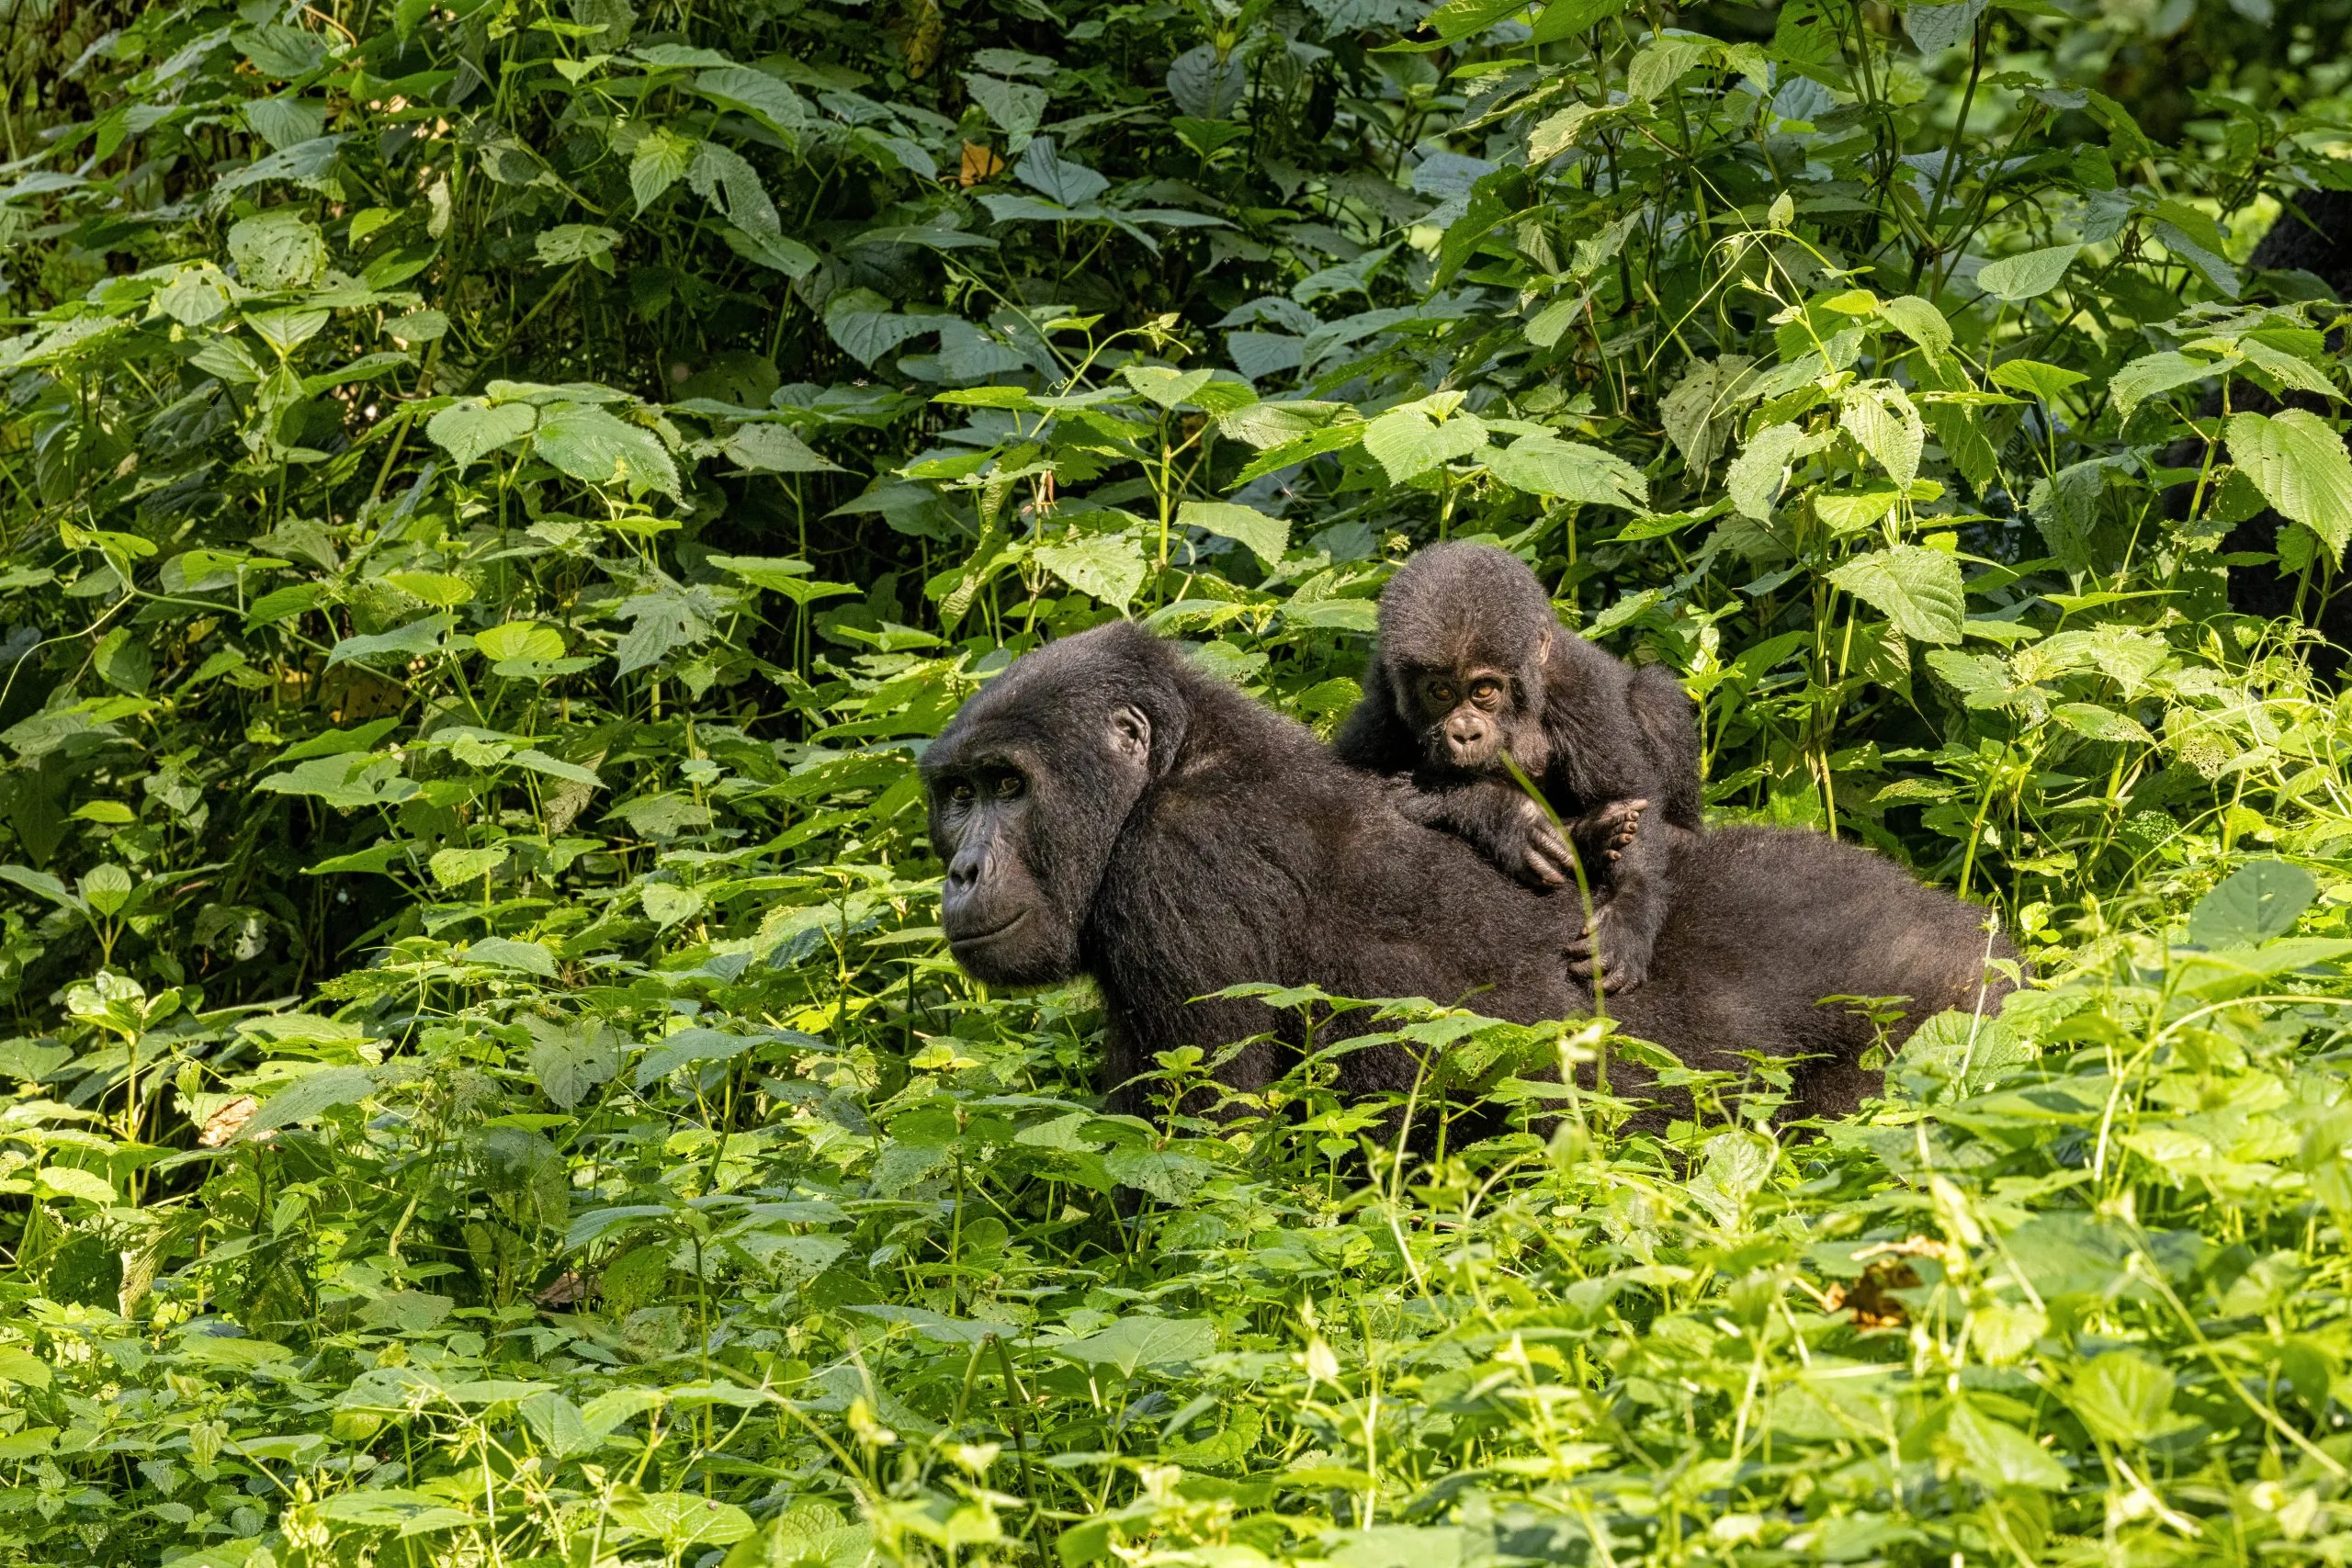 Vuxen gorillahona med unge, Gorilla beringei beringei, i det frodiga lövverket i Bwindi Impenetrable Forest, Uganda. Medlemmar i familjen Muyambis tillvänjningsgrupp i bevarandeprogrammet